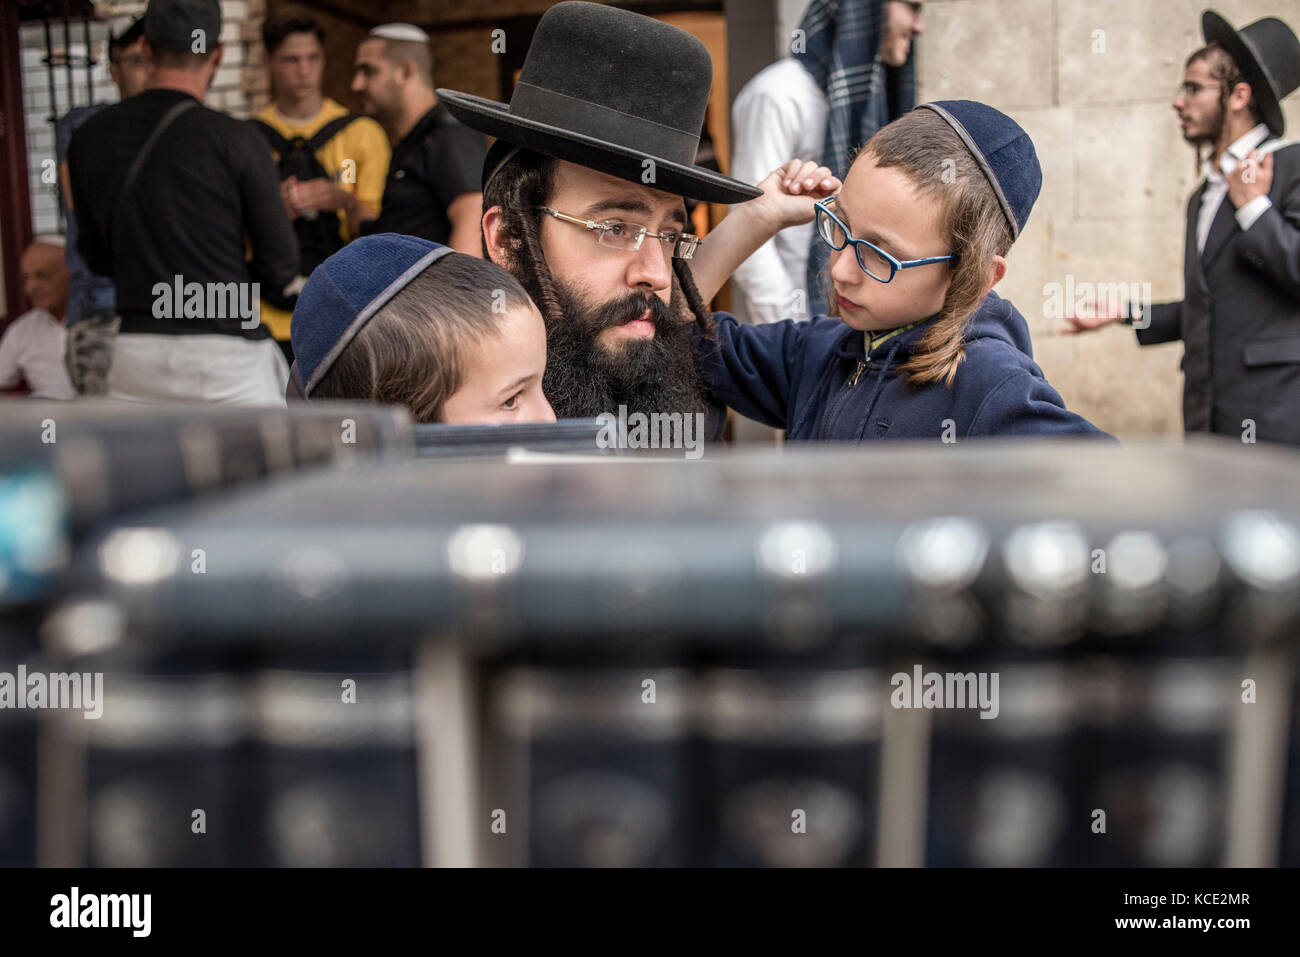 Nouvel An juif à Ouman, en Ukraine. Chaque année, des milliers de juifs  orthodoxes hassidique Bratslav de différents pays se réunissent à Ouman à  Roch Hachana, marque le nouvel an juif, près